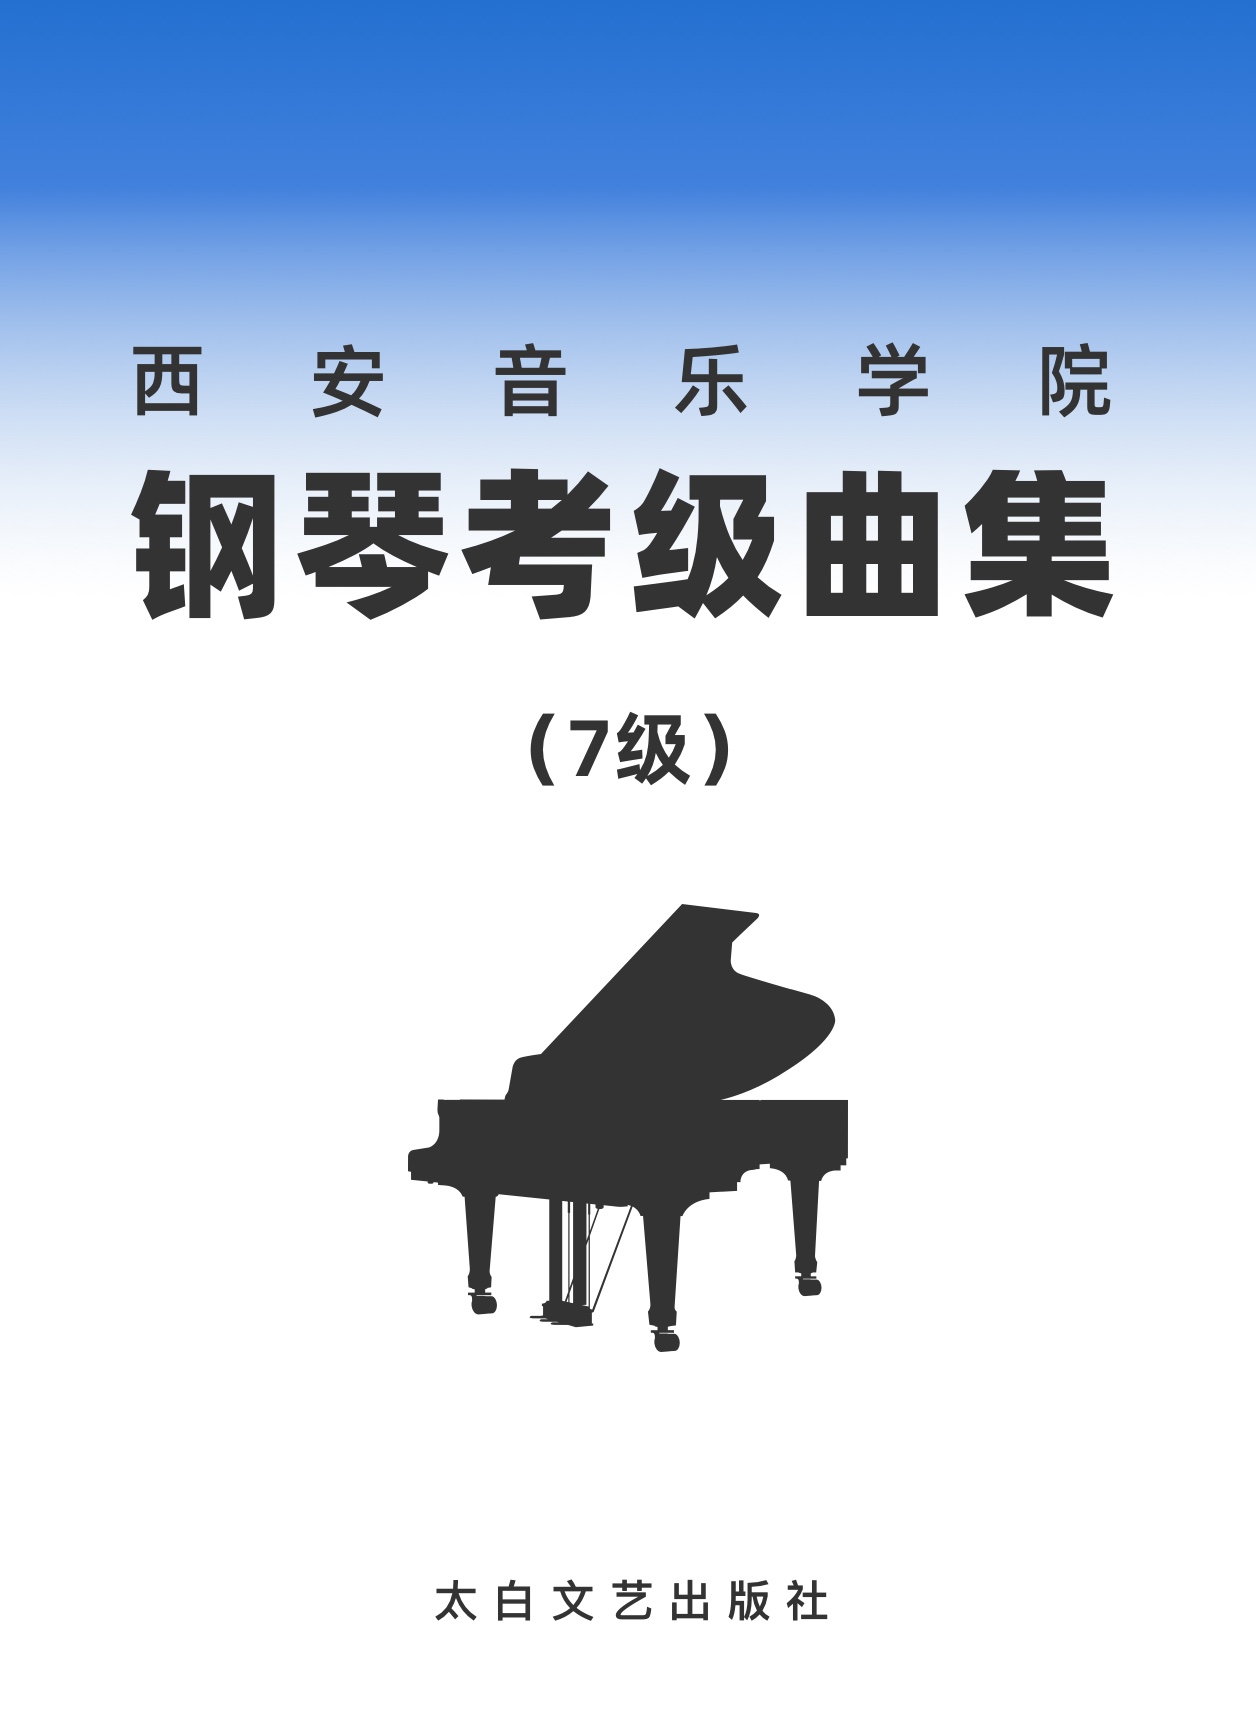 03第七级 升f和声小调音阶-钢琴谱